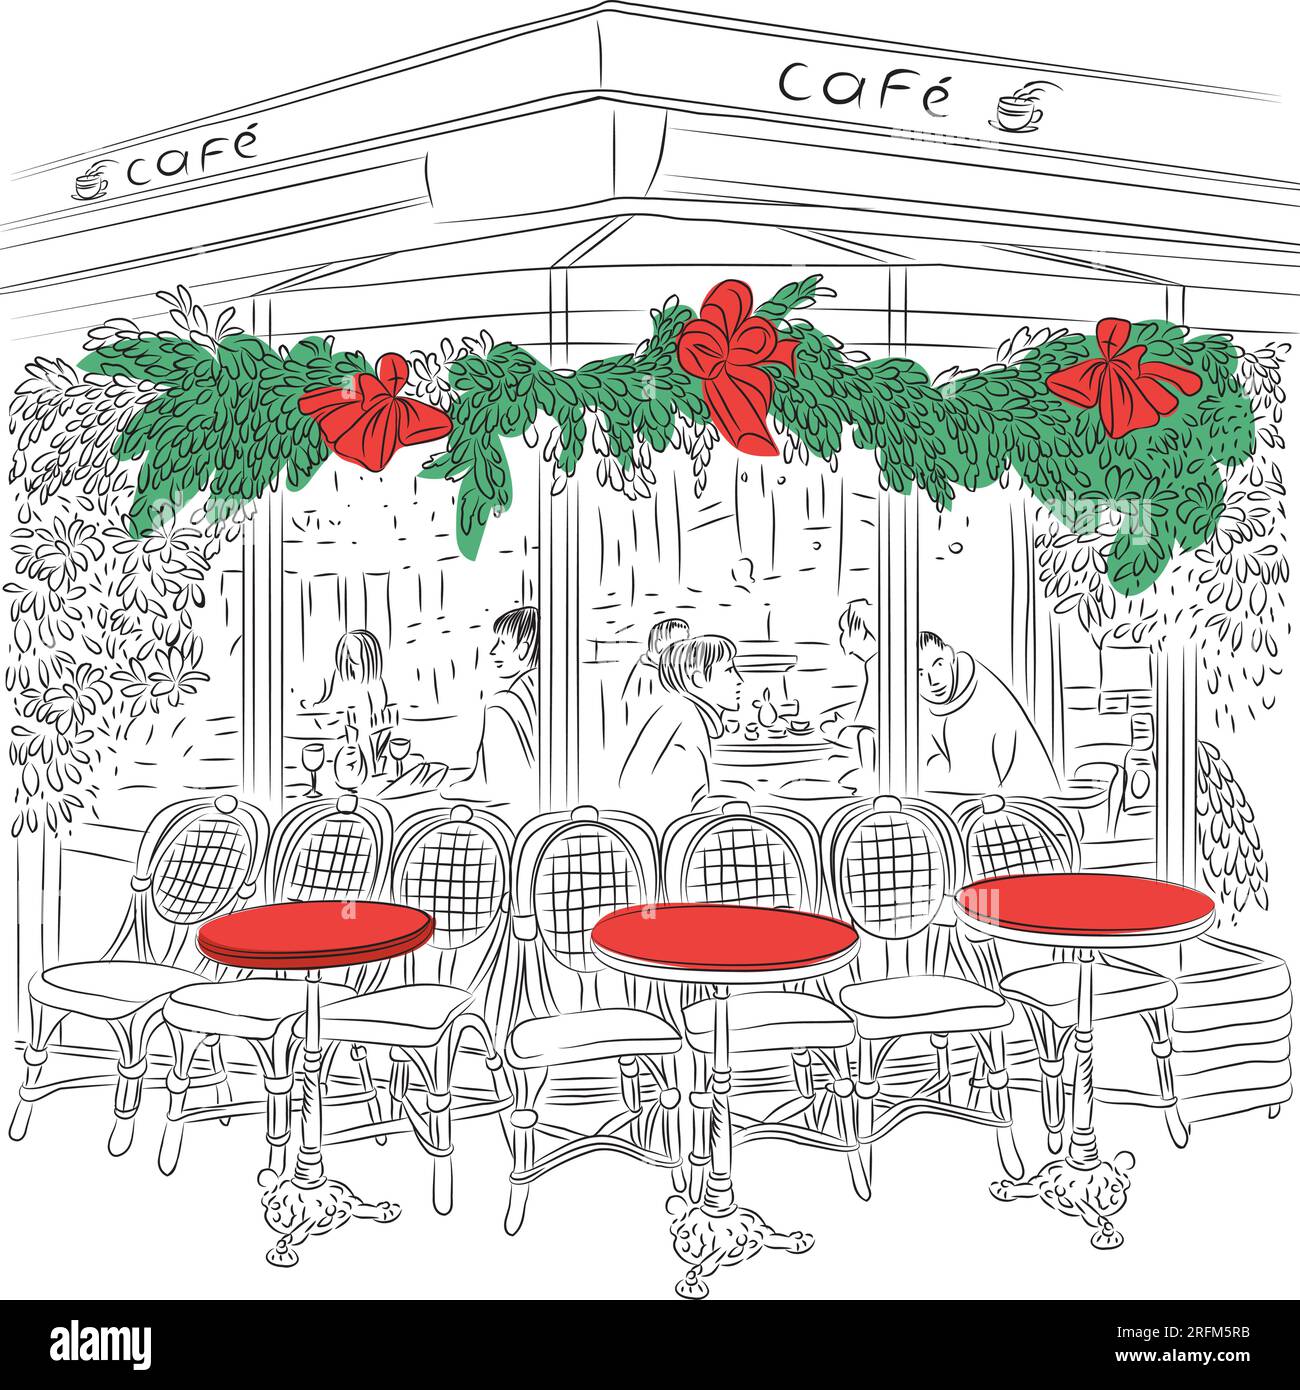 Schizzo del Cafe' Parigino con decorazioni di Natale Illustrazione Vettoriale